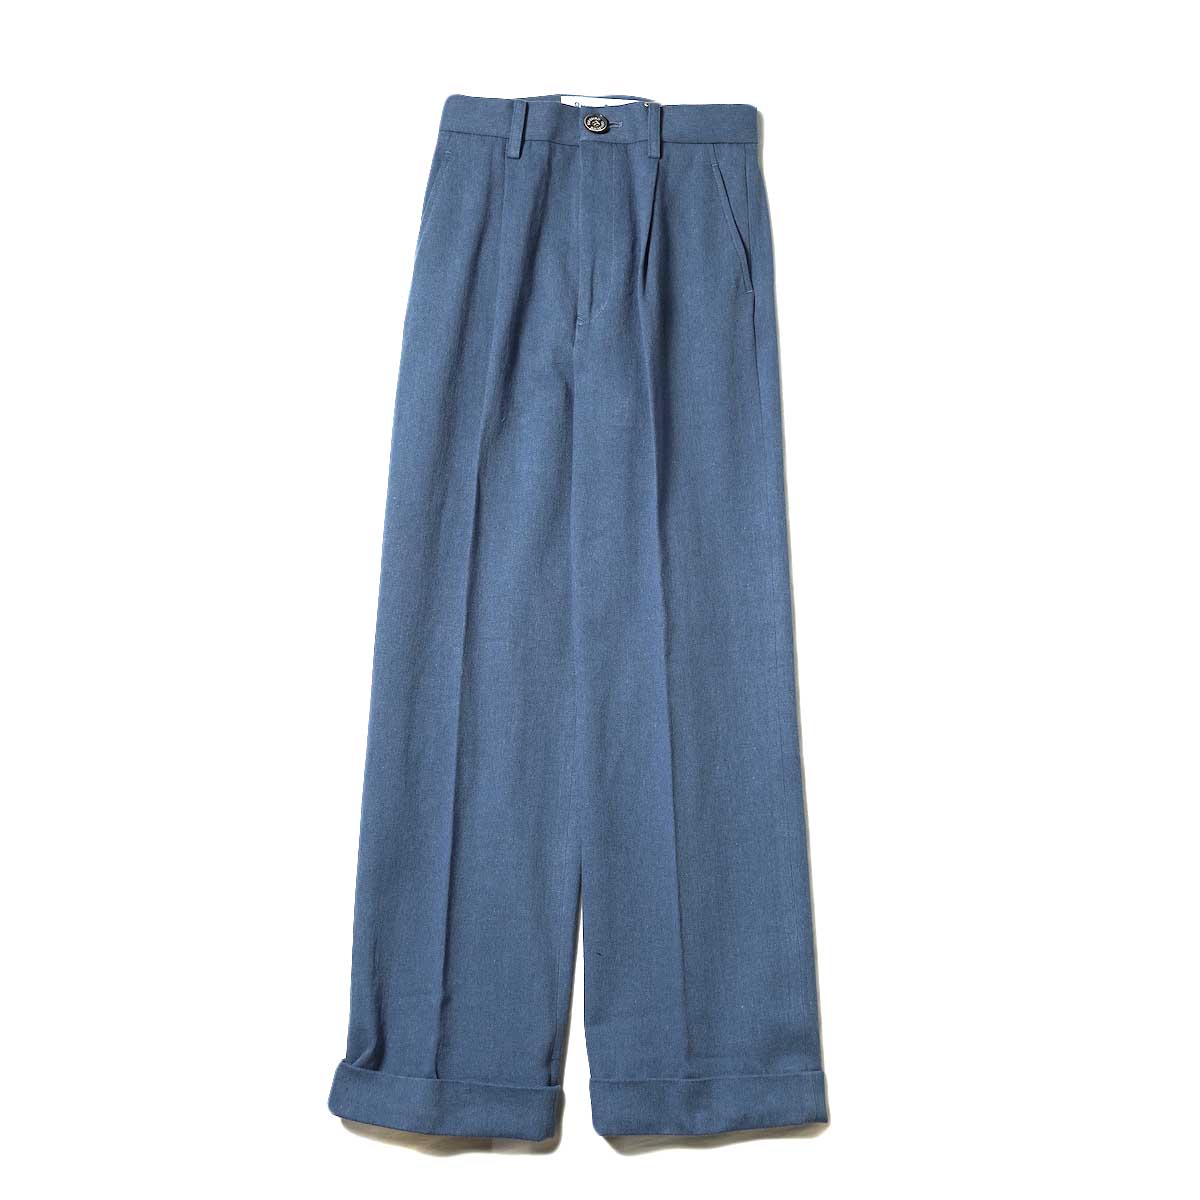 BLUEBIRD BOULEVARD / Cotton Linen Twill High Waisted Pants (Blue)